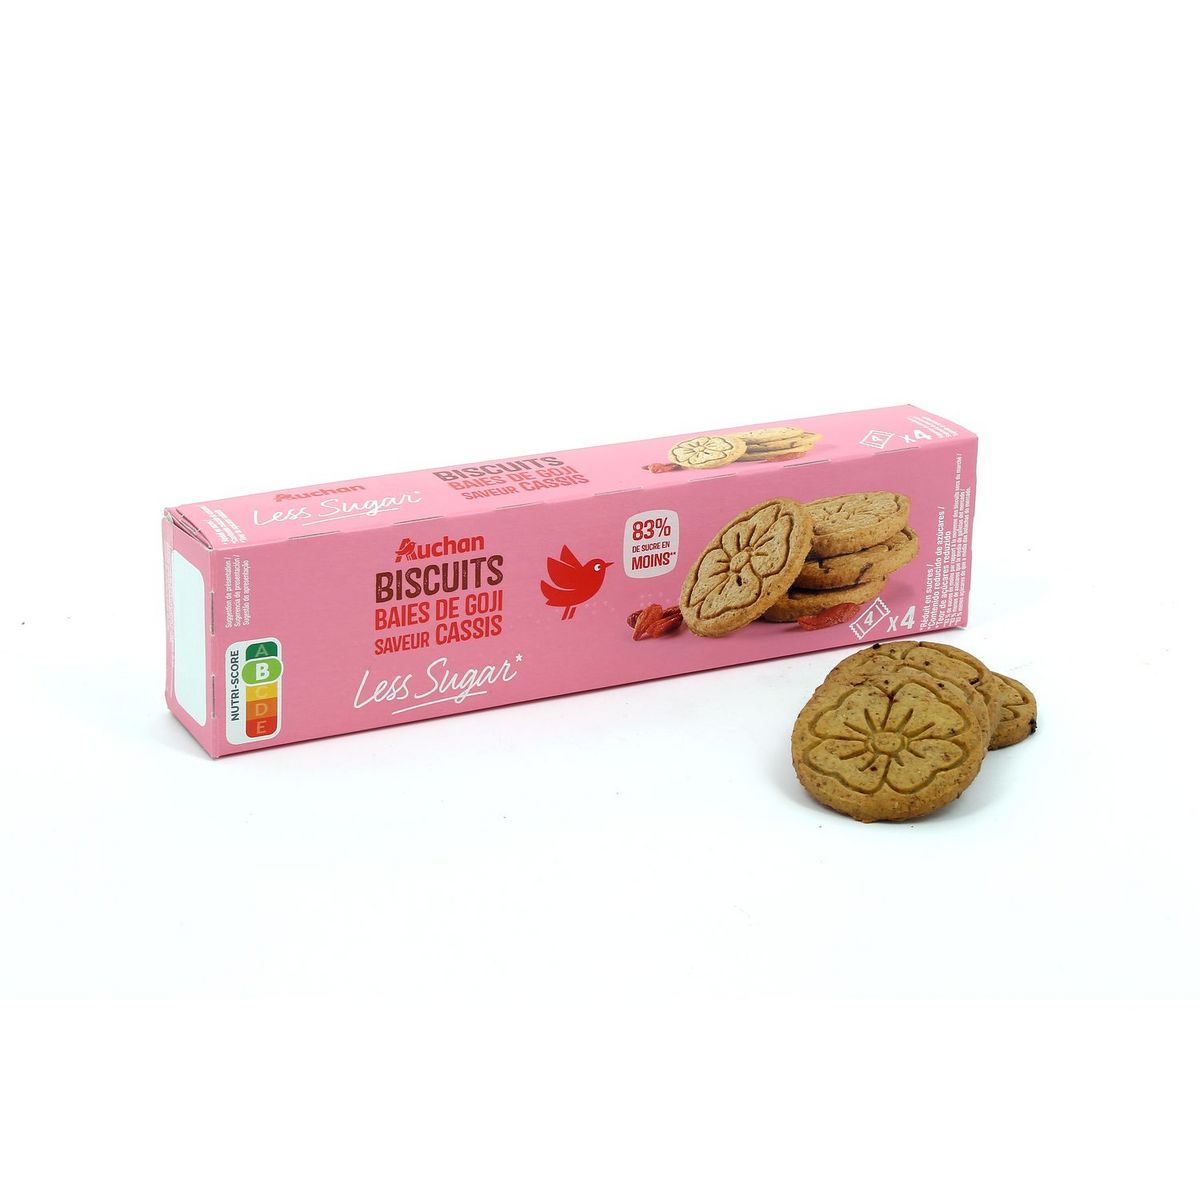 AUCHAN Less Sugar biscuits baies de goji saveur cassis 4x4 pièces 130g